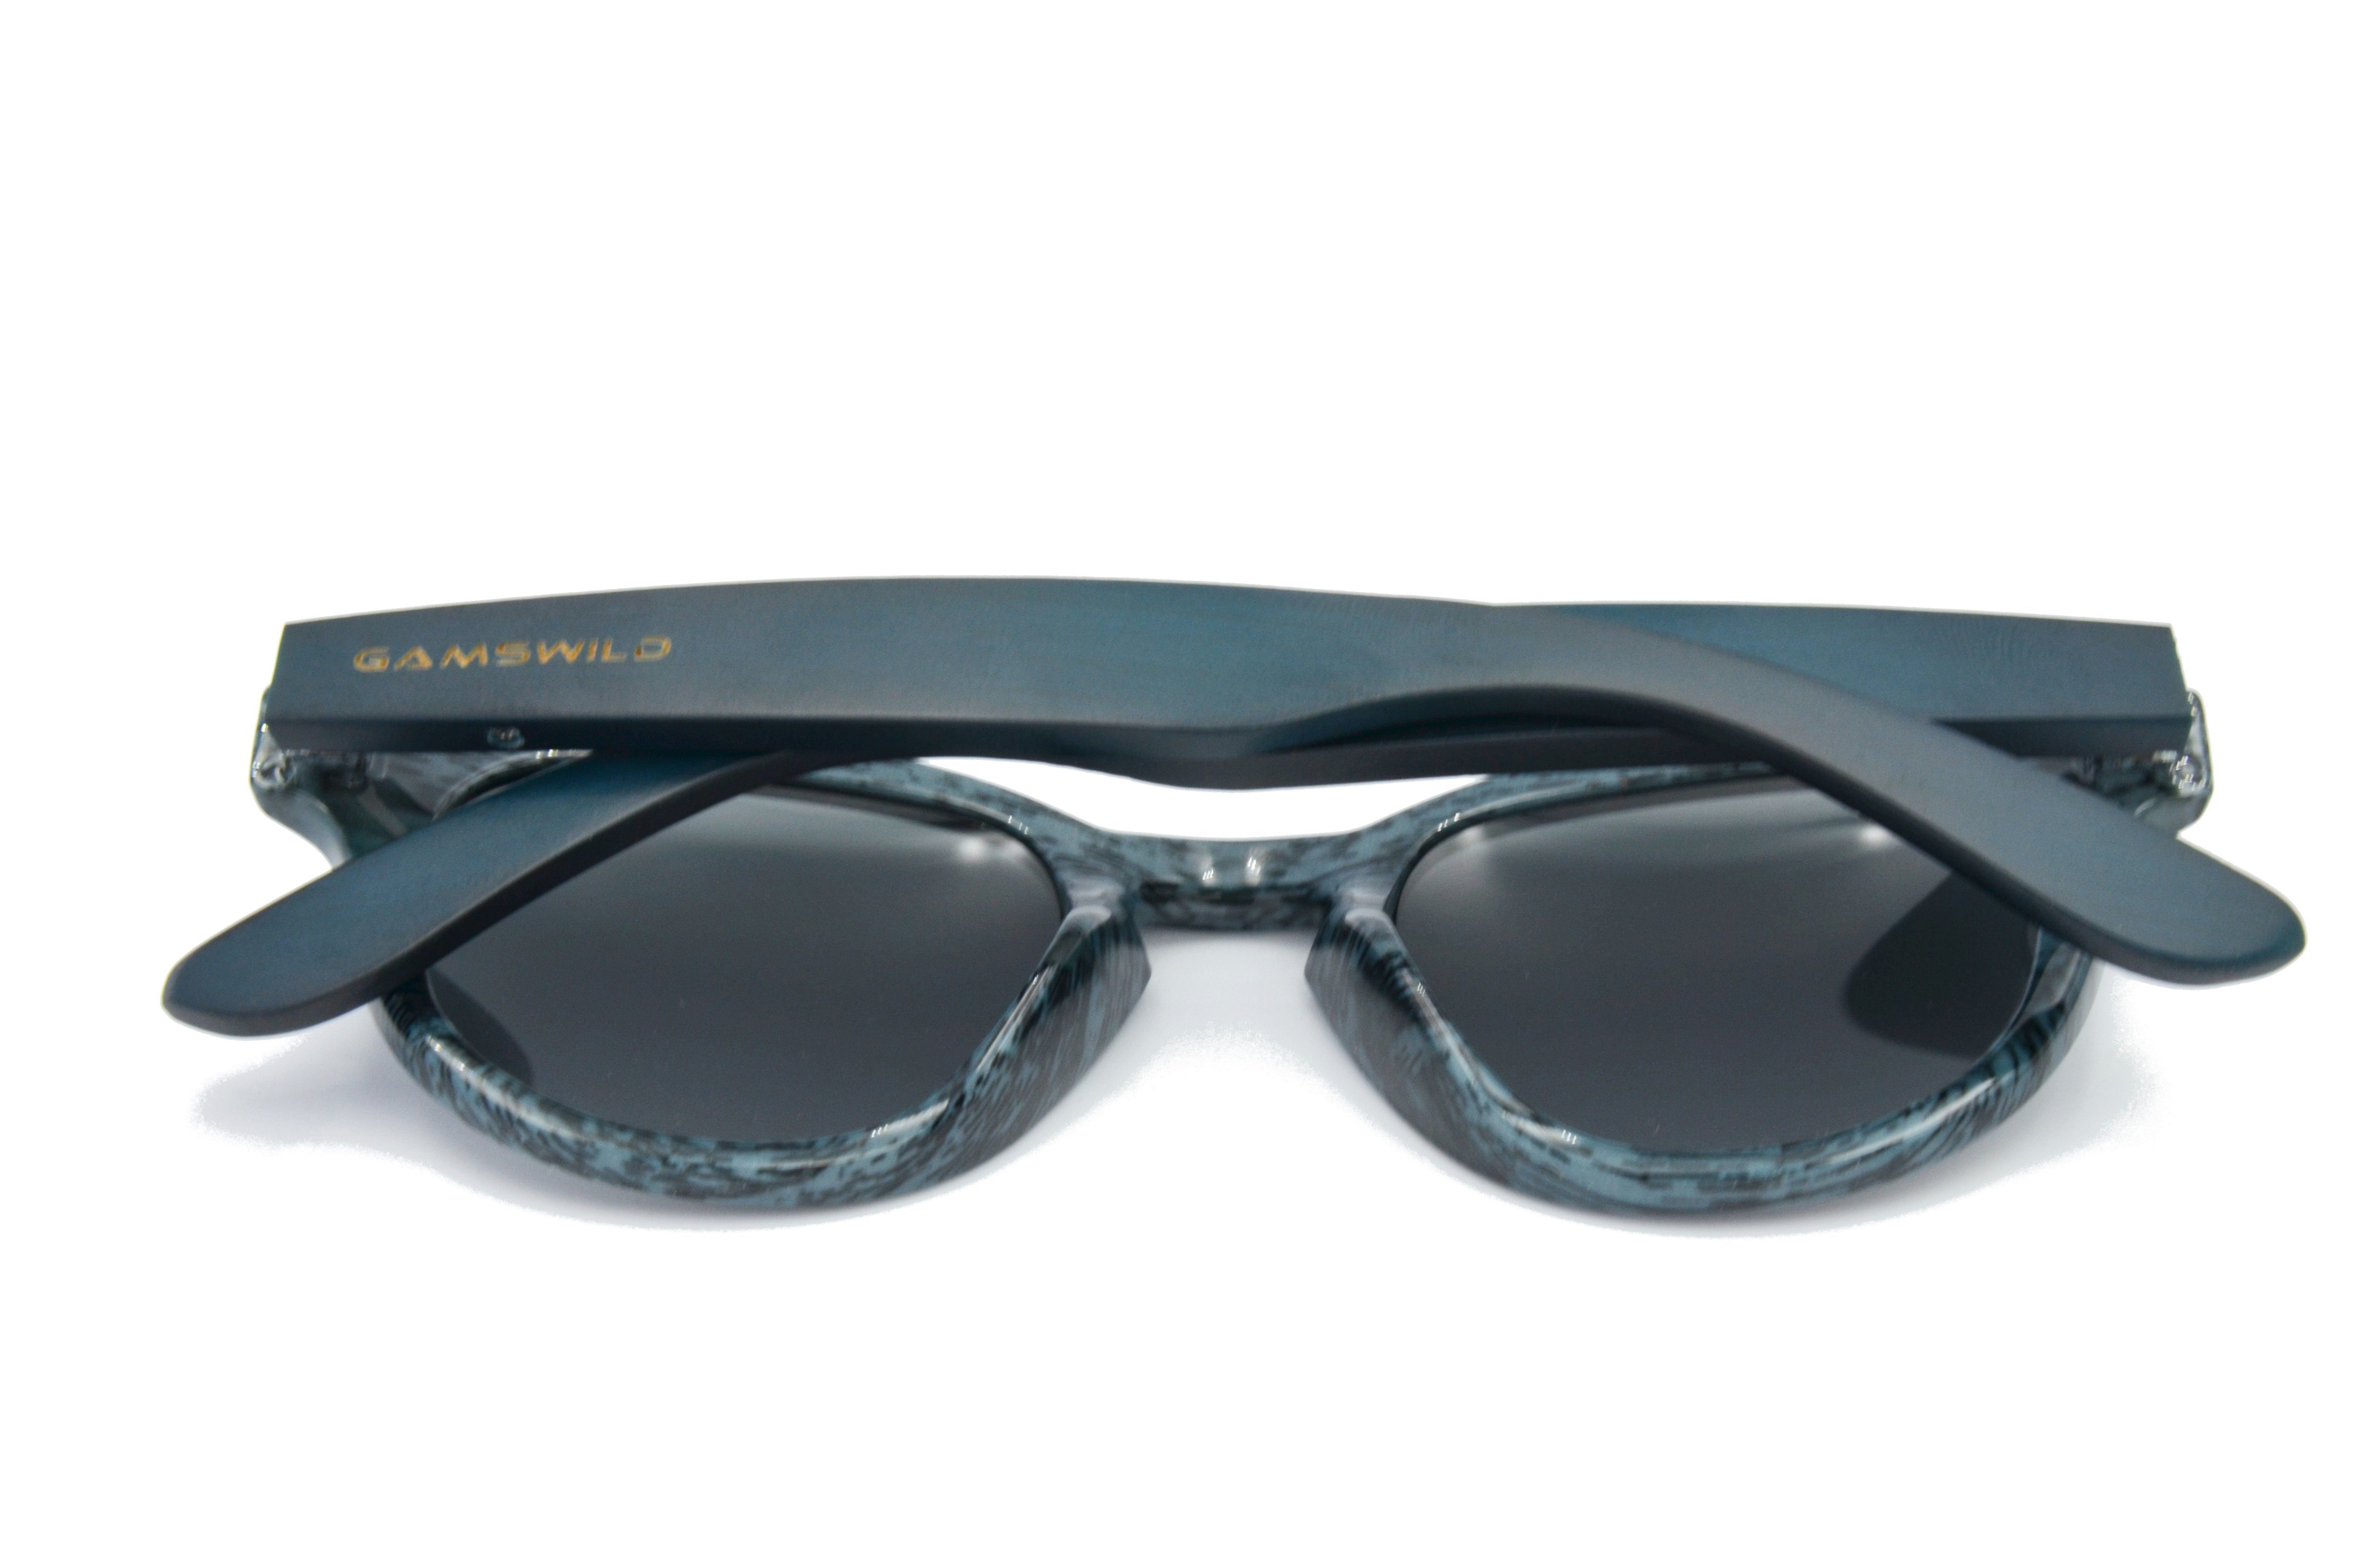 Gamswild Sonnenbrille WM1428 rot-braun, dunkelbraun blau, Holzoptik Fassung Bambusholzbügel/ Modebrille Damen, GAMSSTYLE